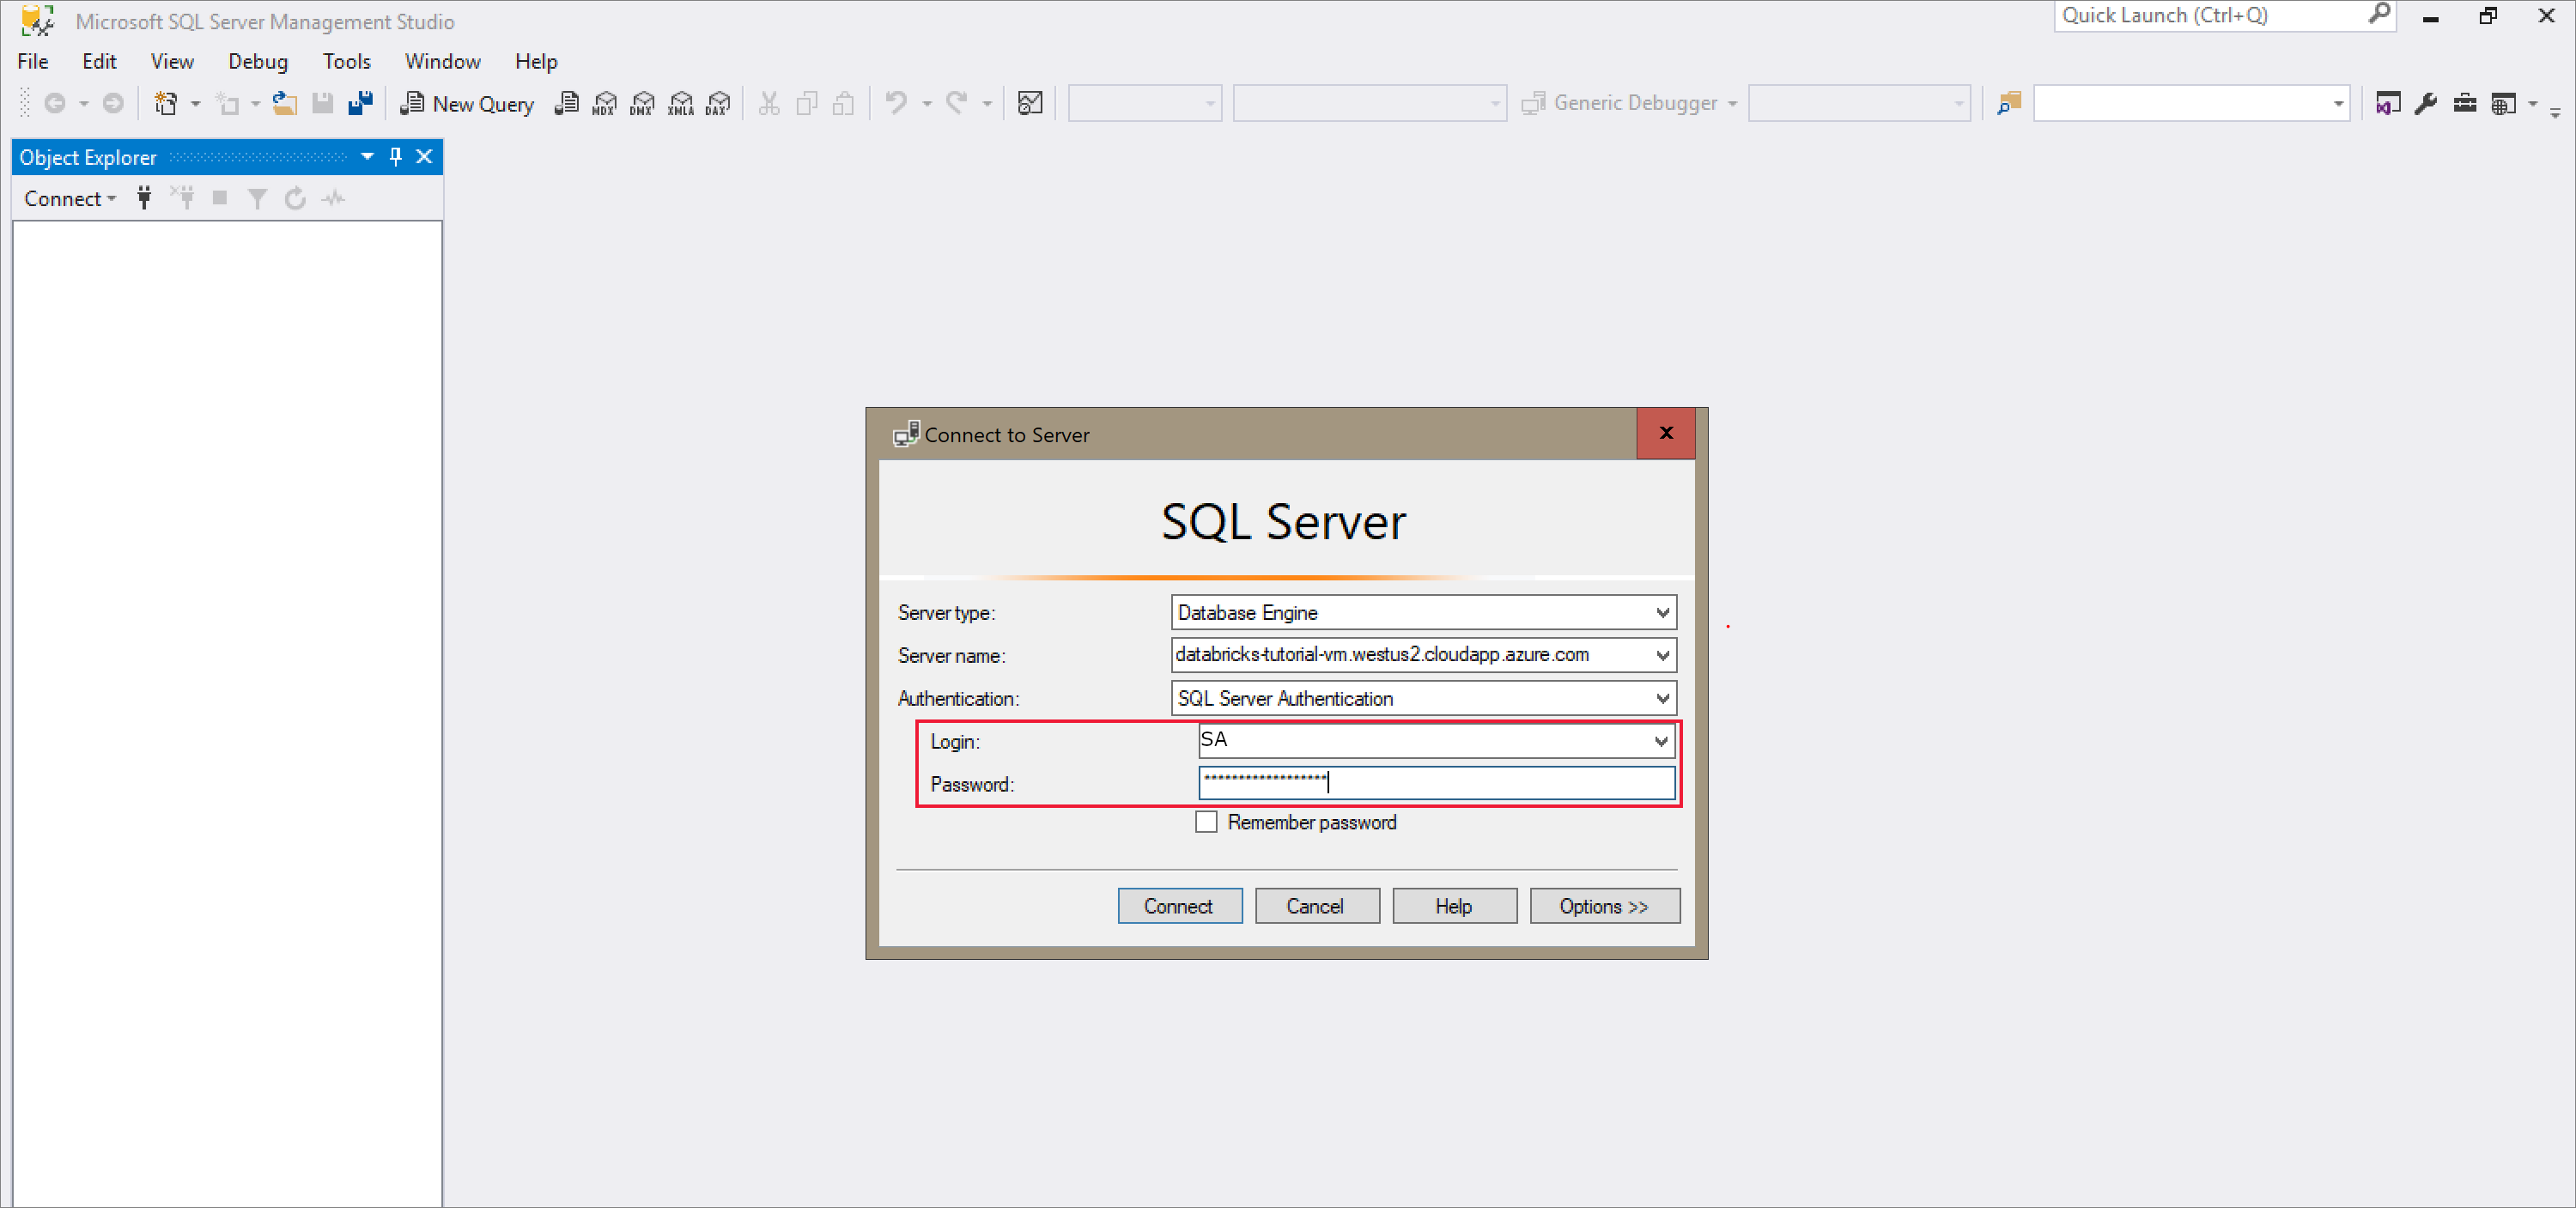 Ligar a SQL Server com o SQL Server Management Studio